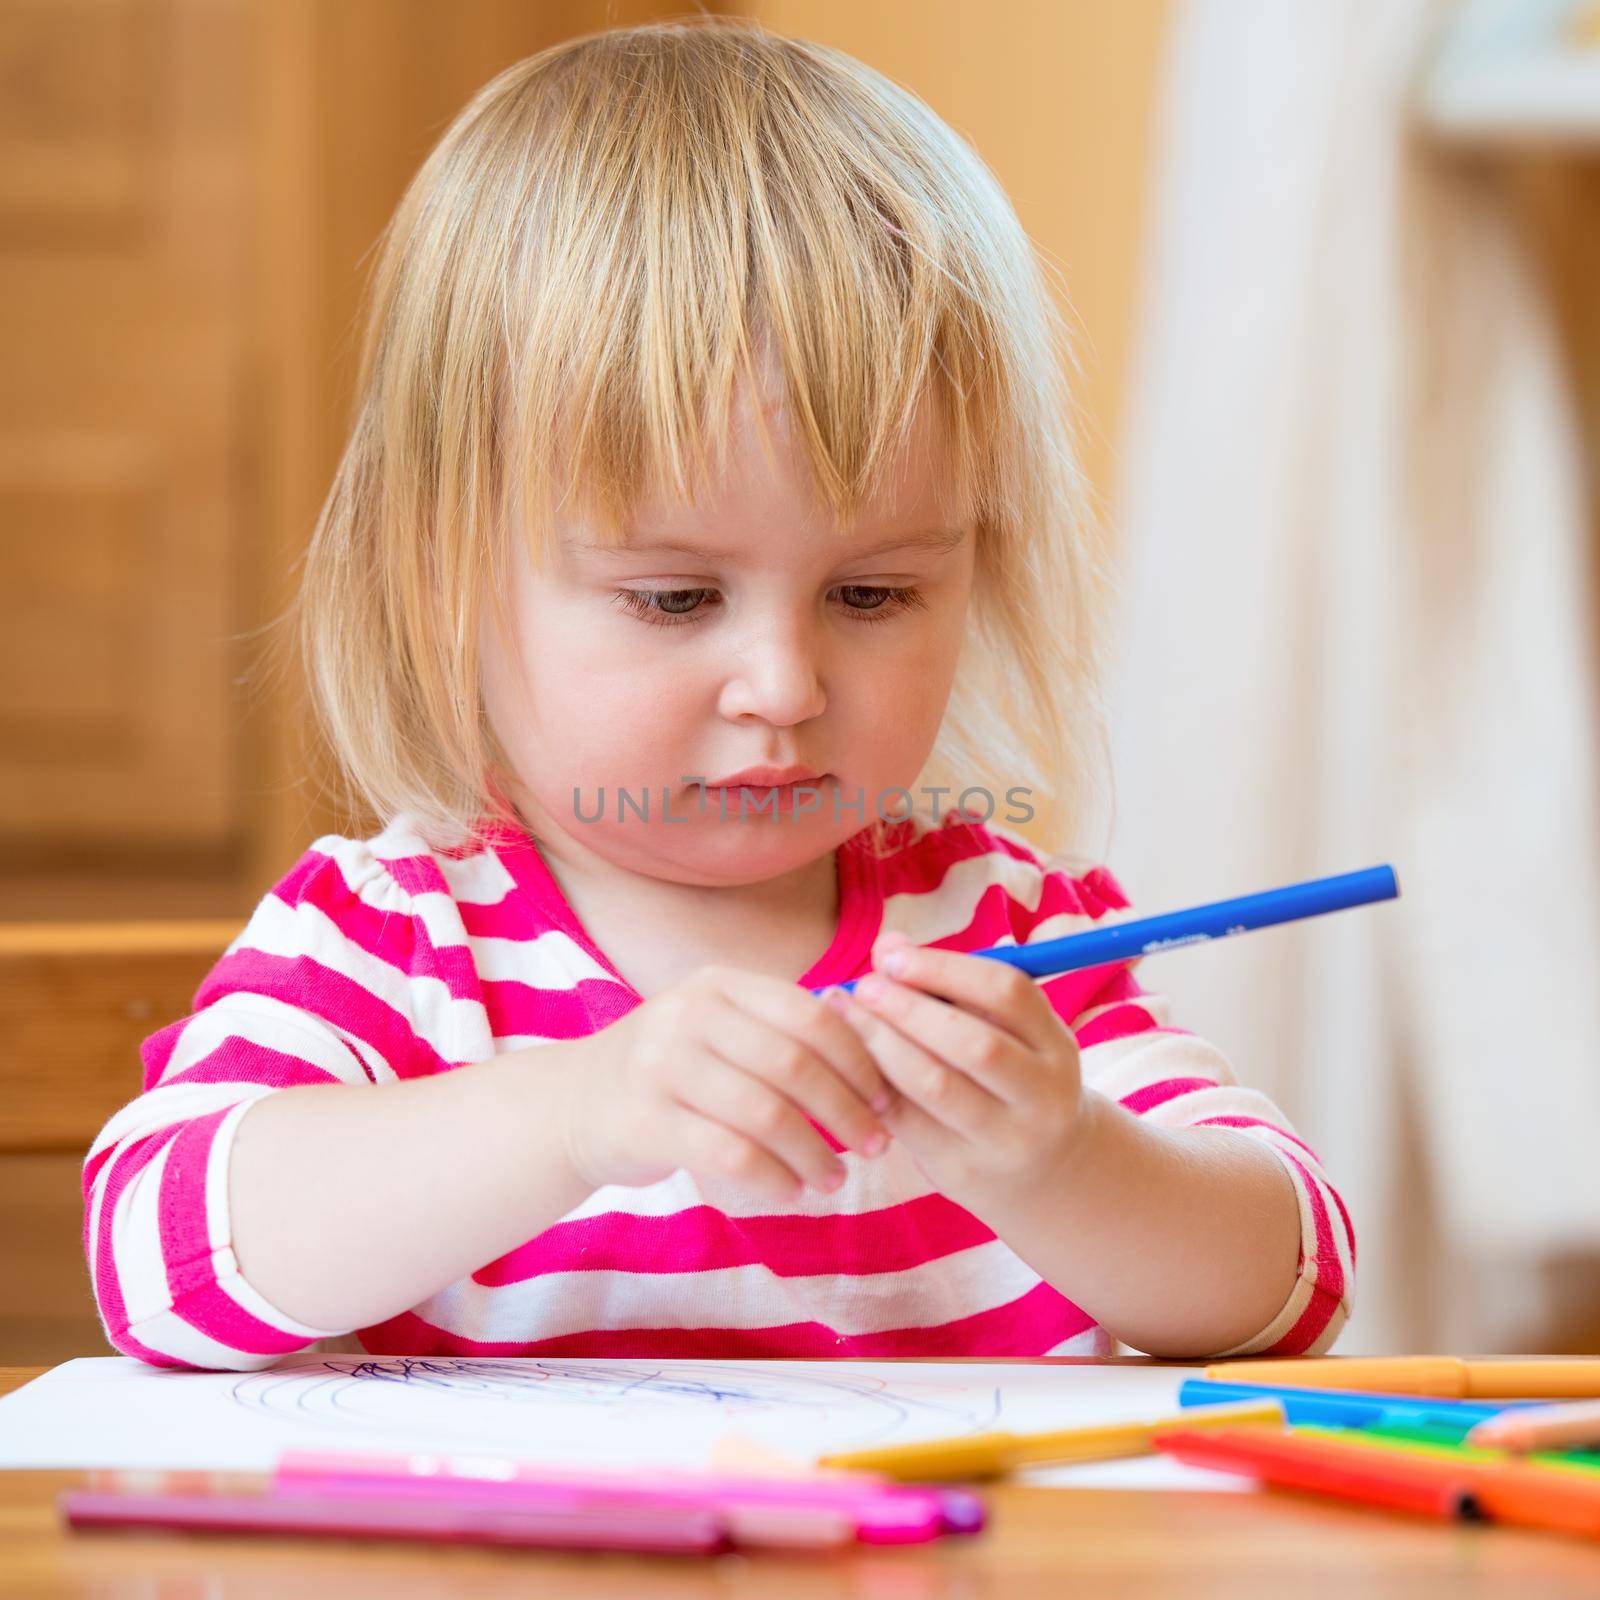 Cute little girl draws felt-tip pens by tan4ikk1